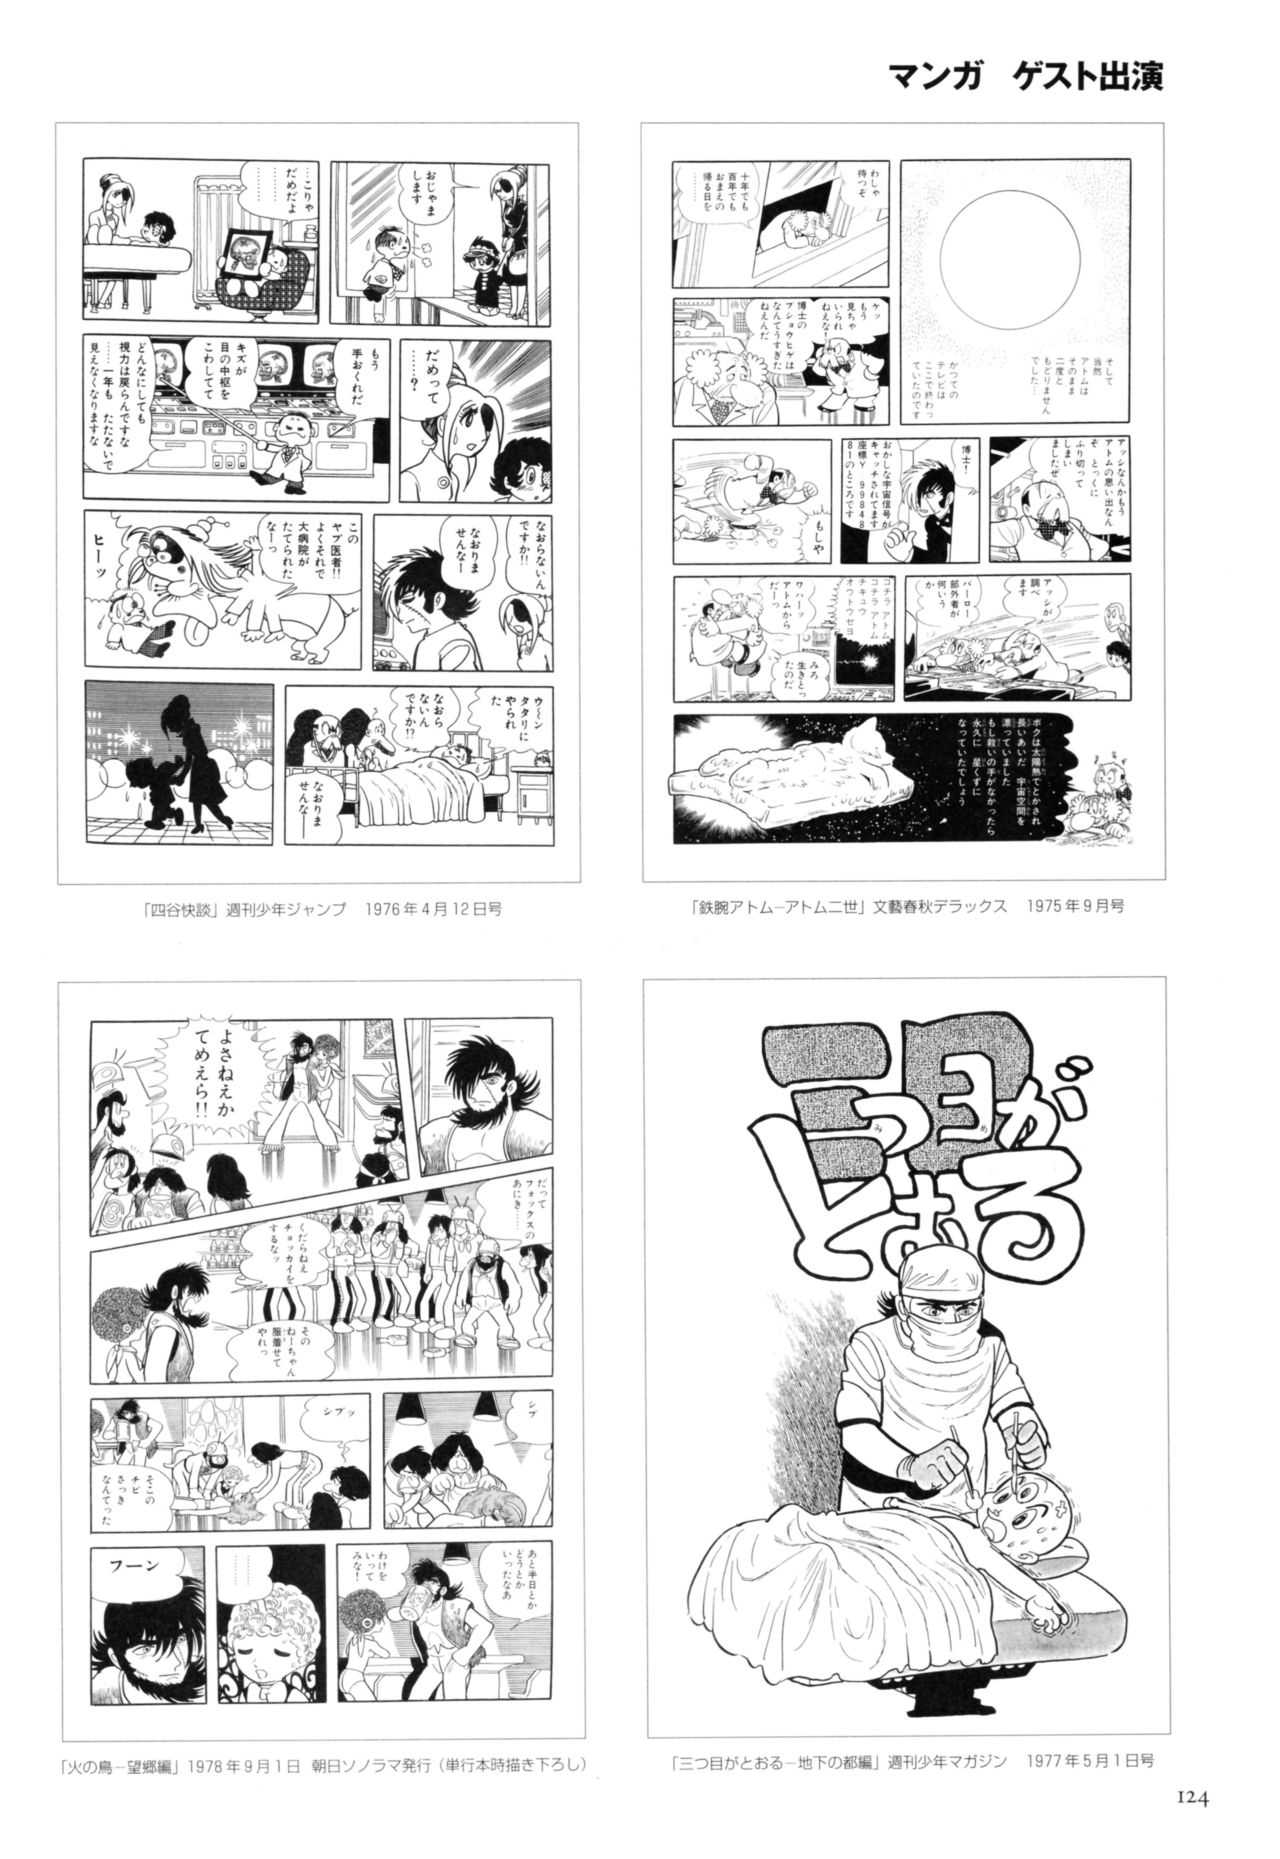 All of Black Jack By Osamu Tezuka 128